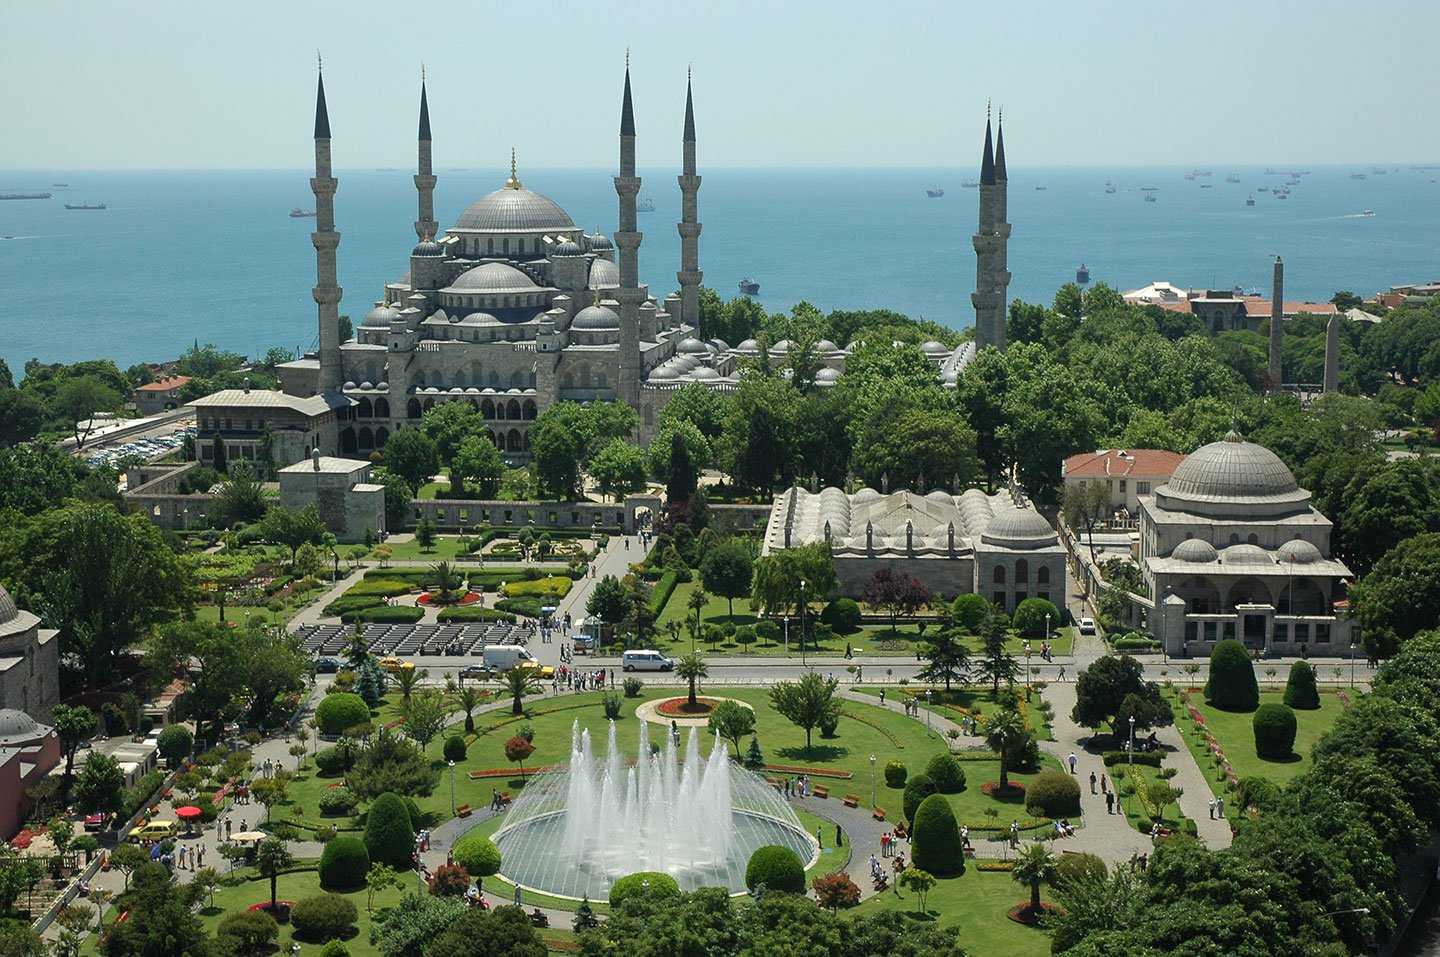 Голубая мечеть или мечеть султанахмет - посещаем символ стамбула